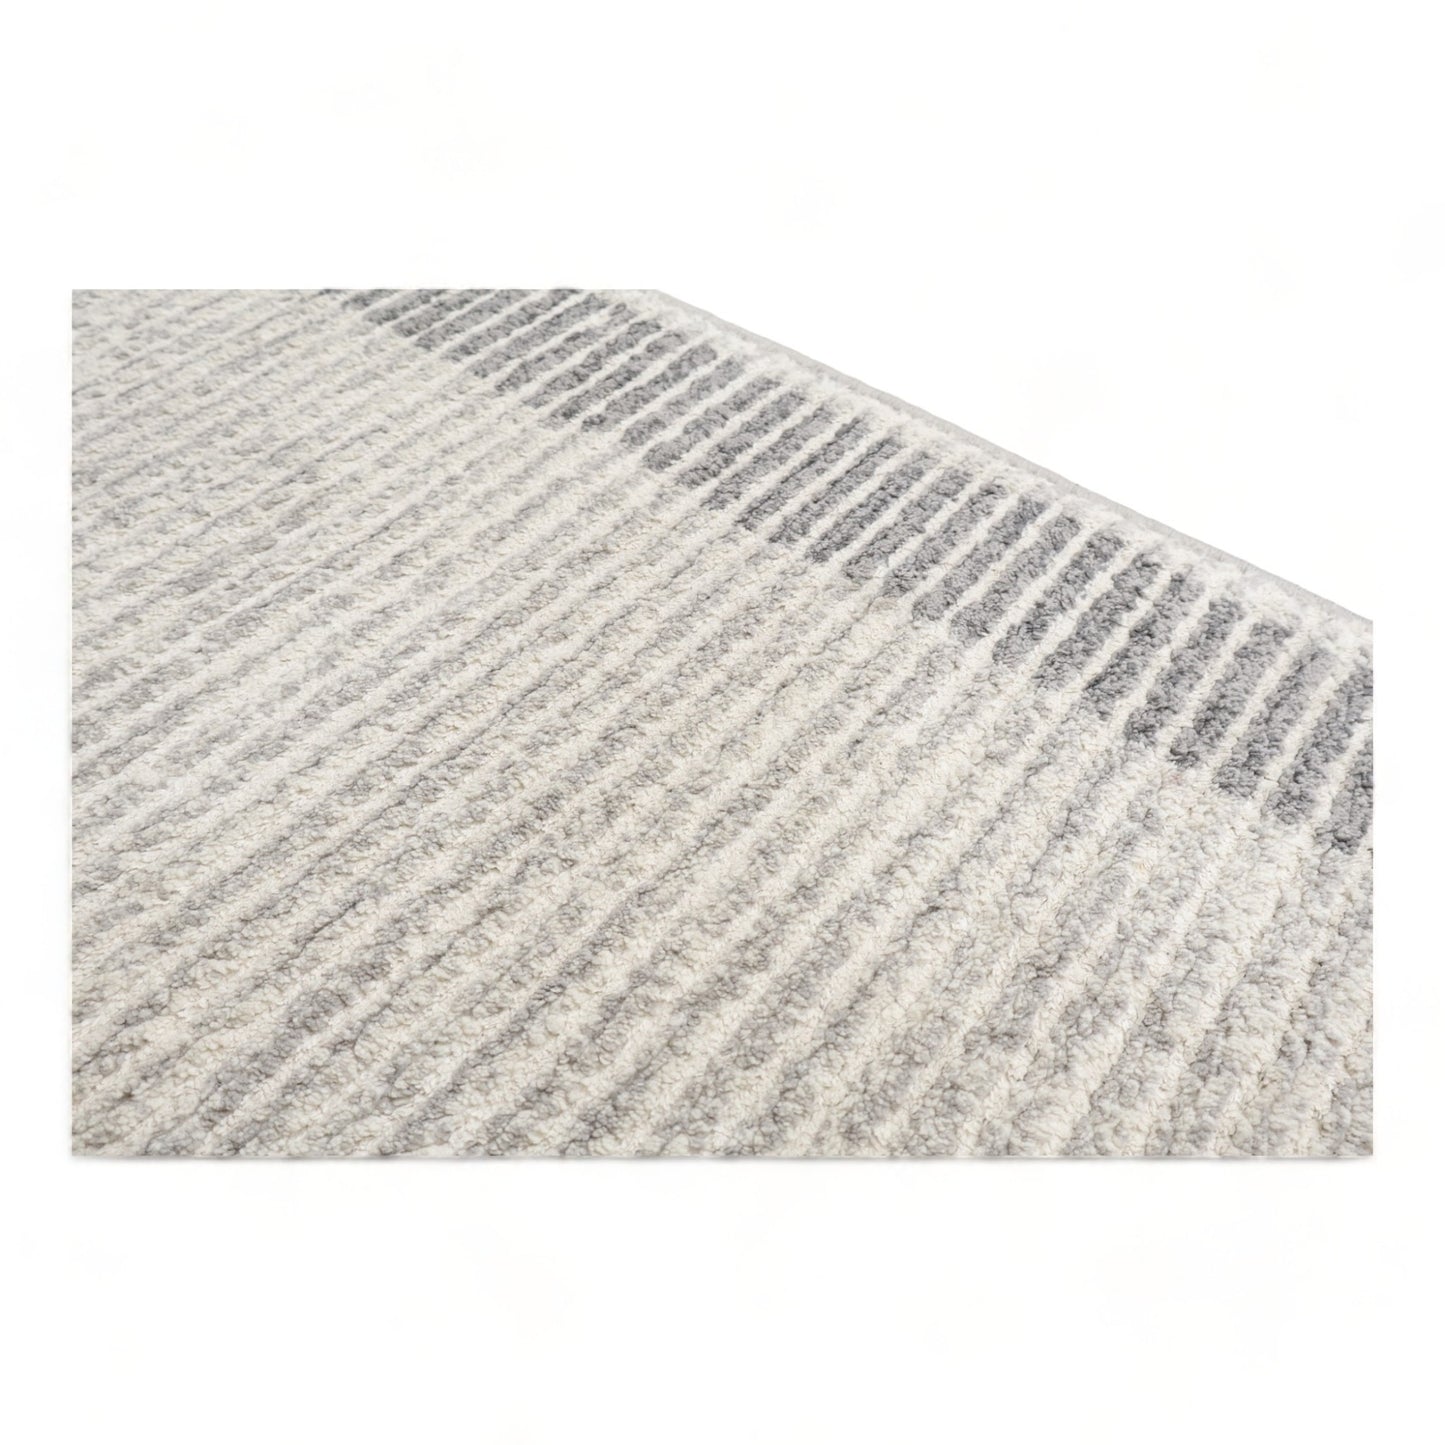 Nyrenset | Sort og hvit teppe. 200cm